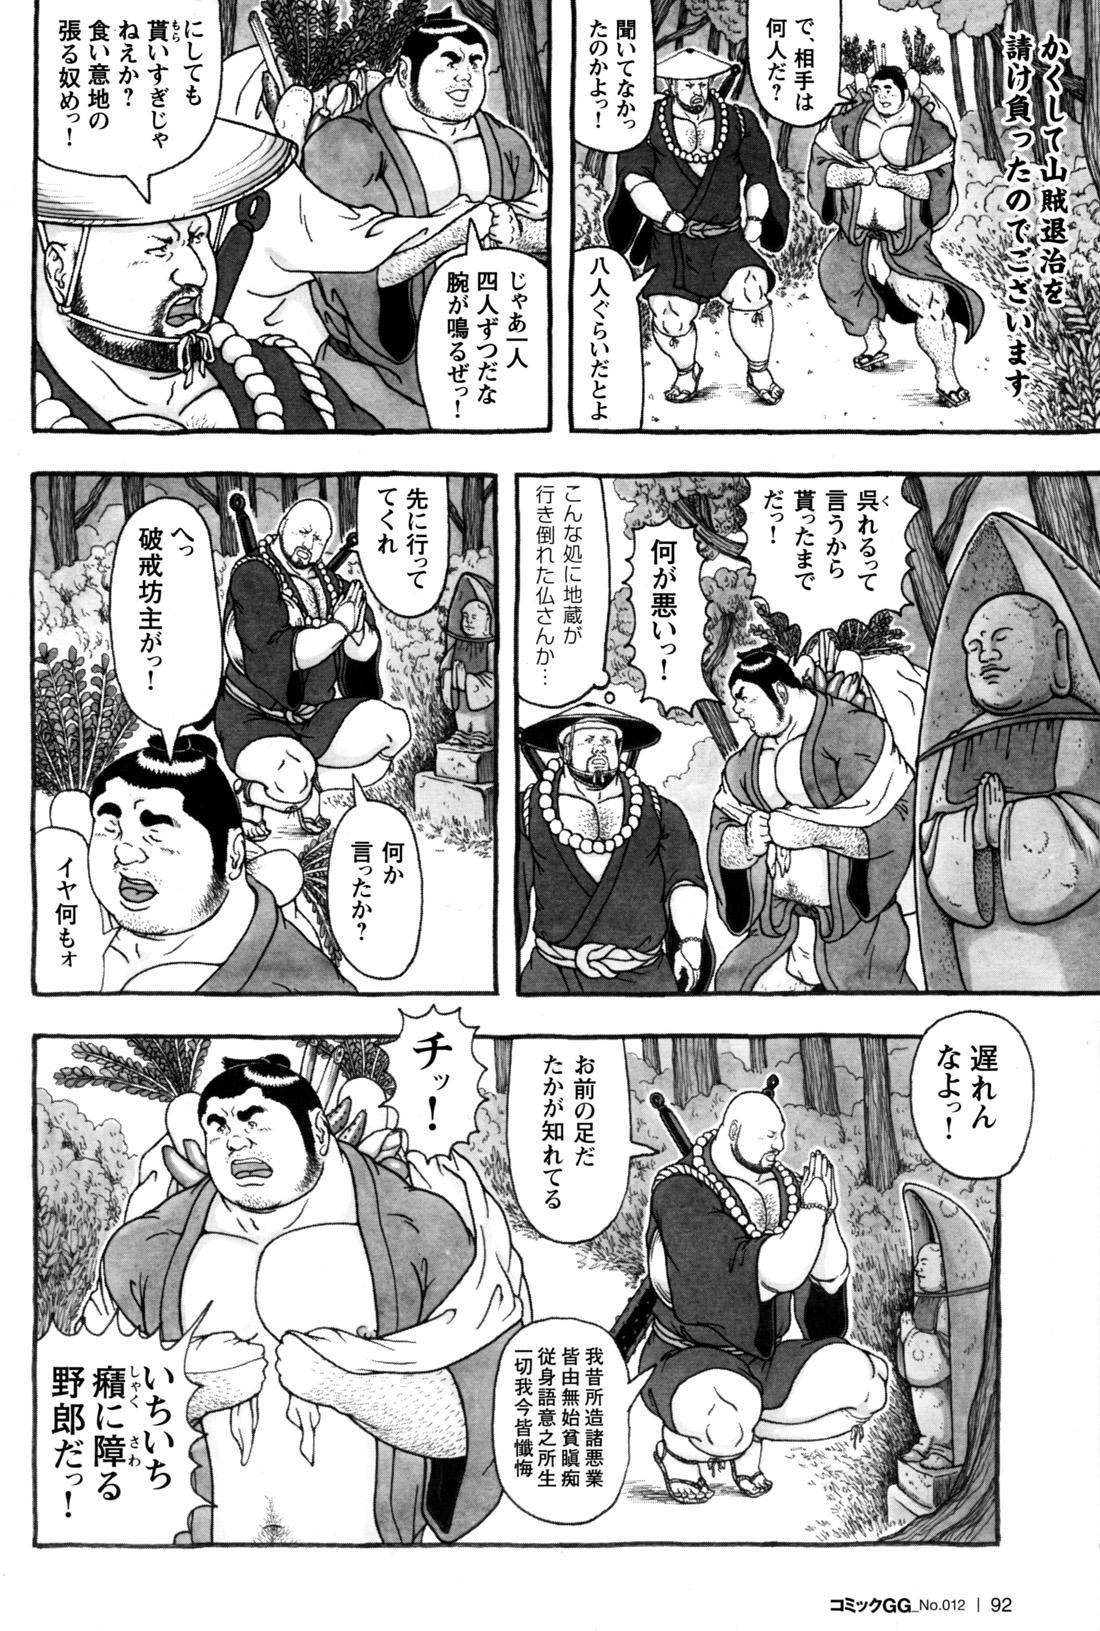 Comic G-men Gaho No.12 Aibou 85